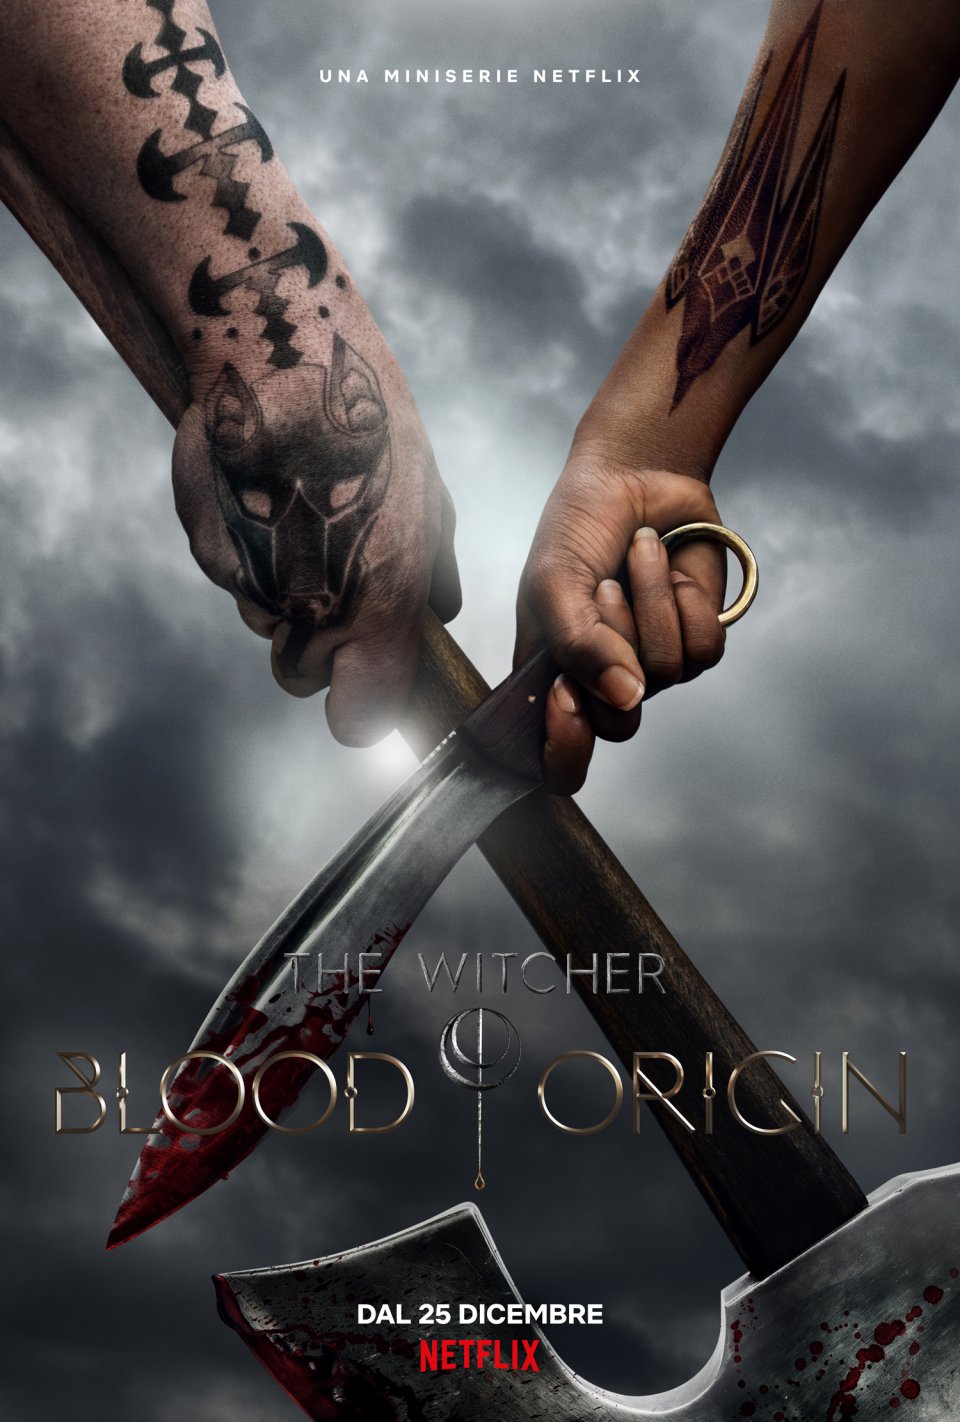 Witcher Blood Origin Poster